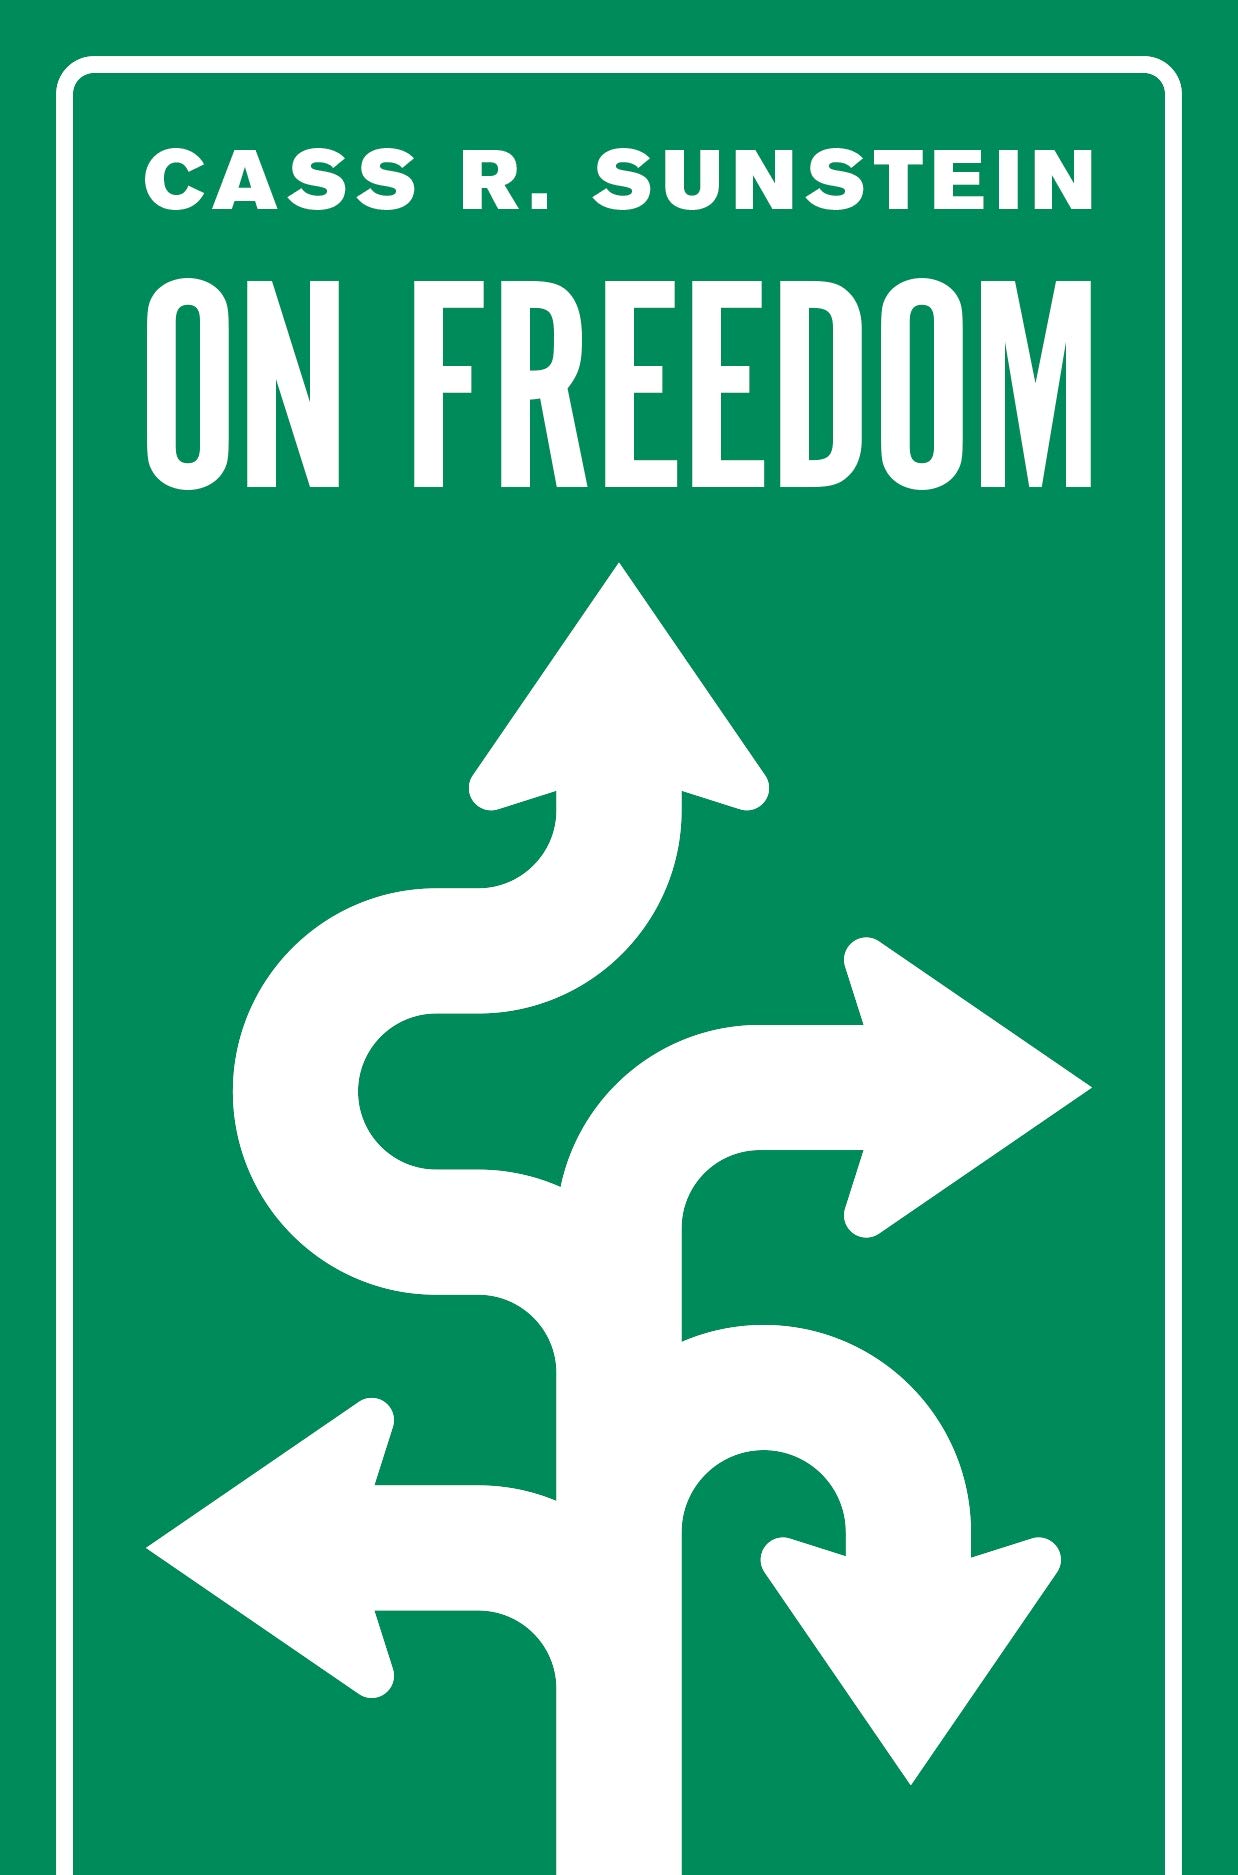 On Freedom | Cass R. Sunstein